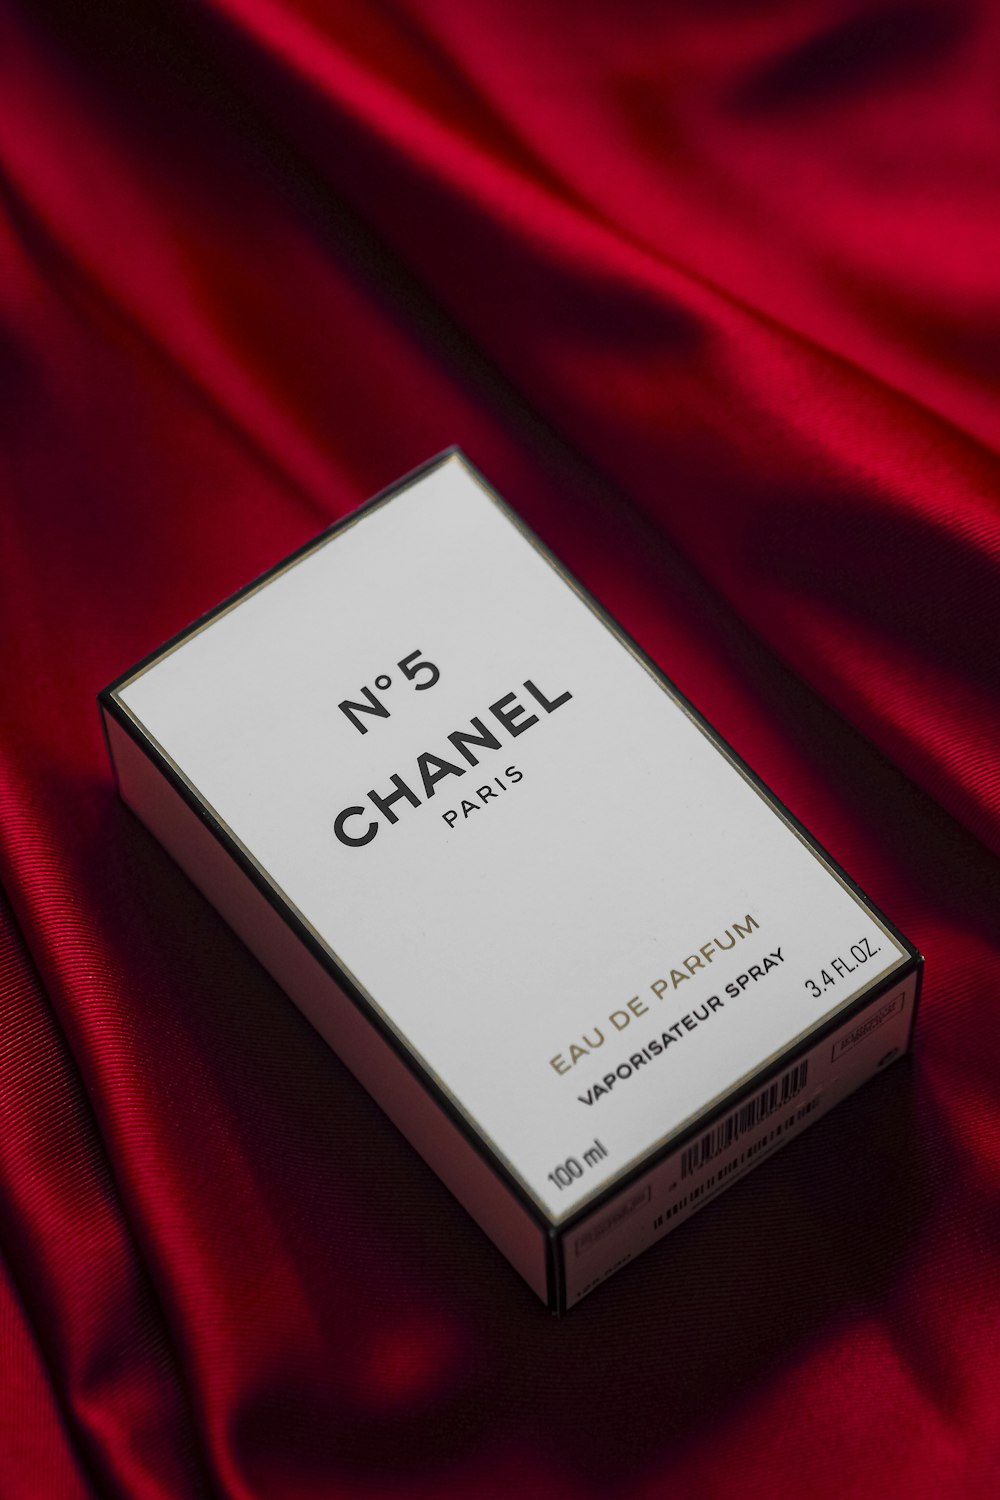 Uma caixa de Chanel No 5 em um pano vermelho